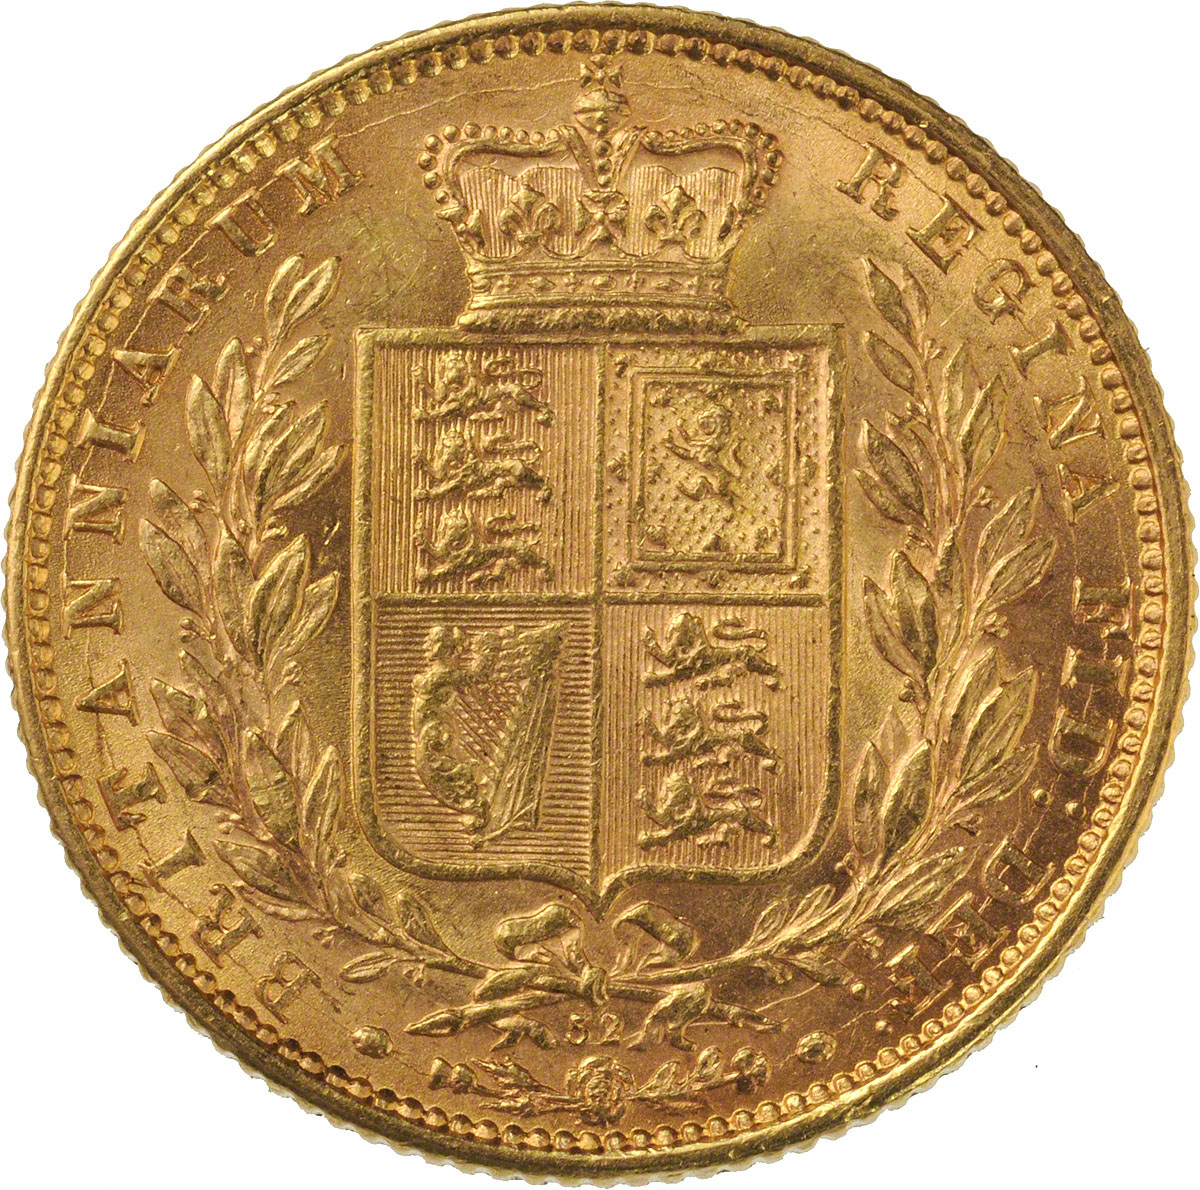 1872 Βικτώρια – Θυρεός (Νομισματοκοπείο Λονδίνου)